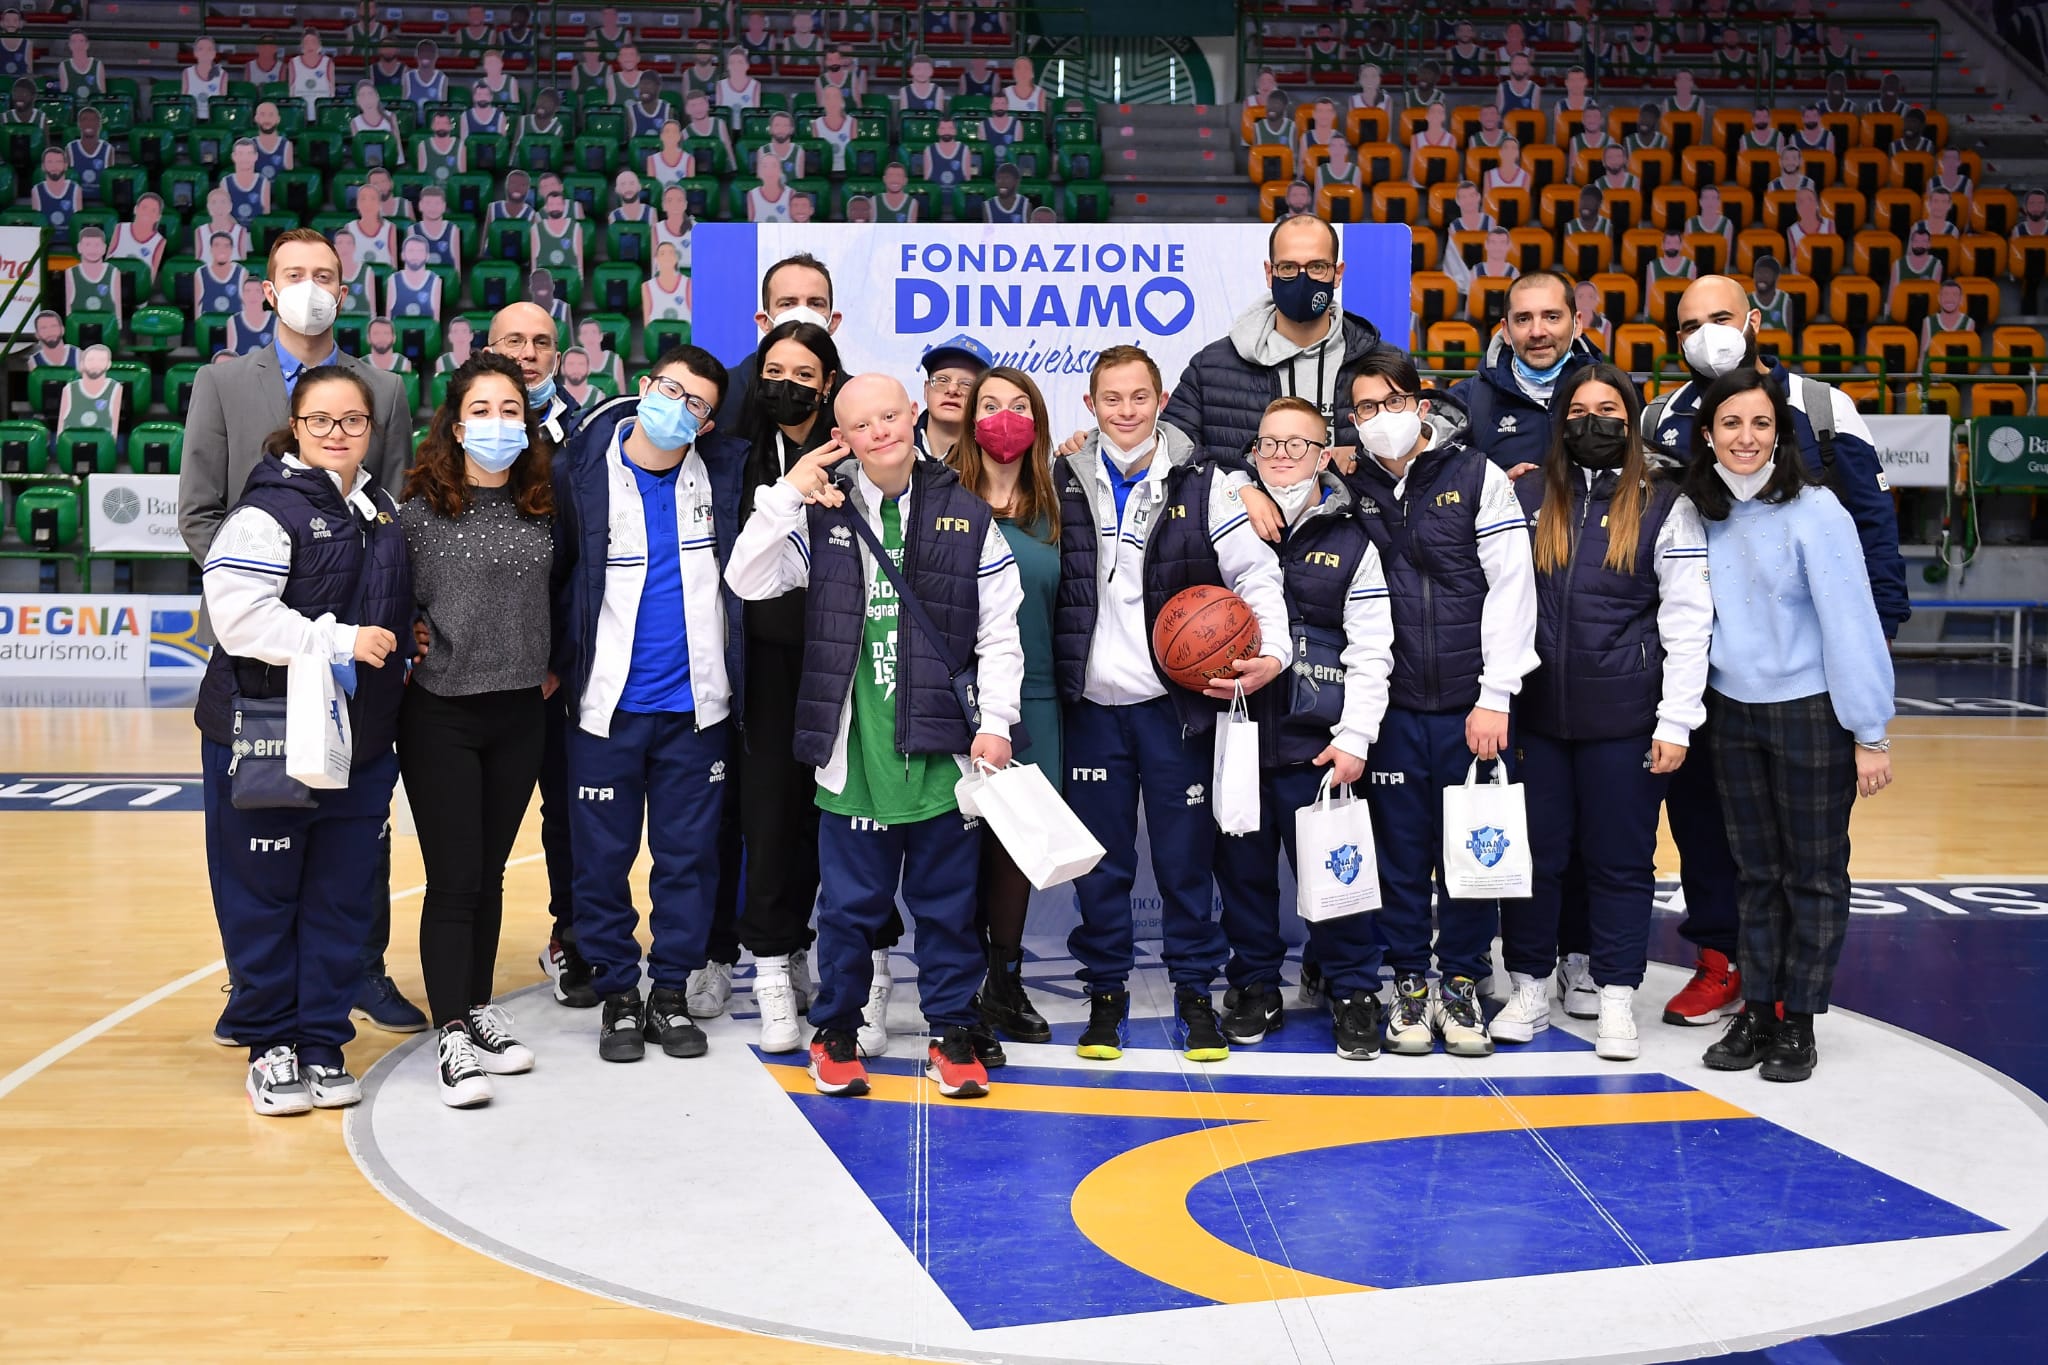 La Nazionale di pallacanestro al decennale della Fondazione Dinamo